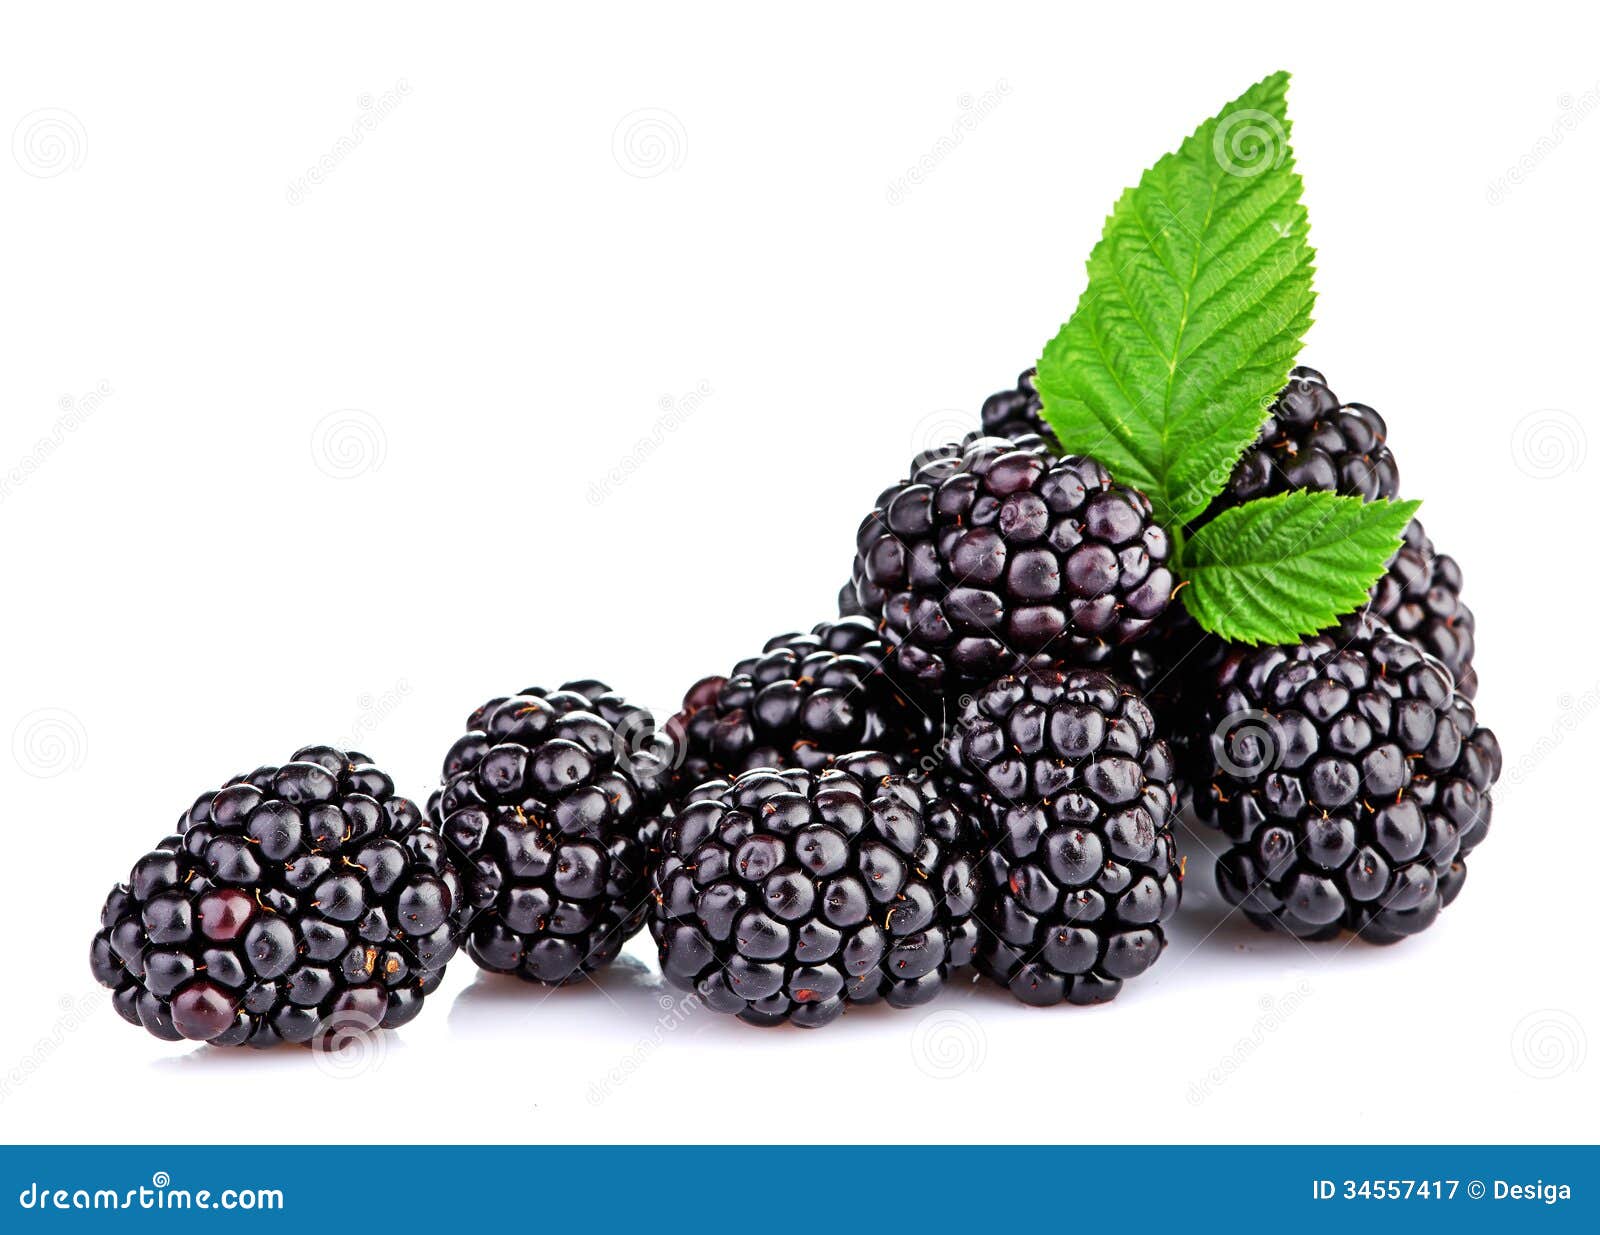 blackberry  on white